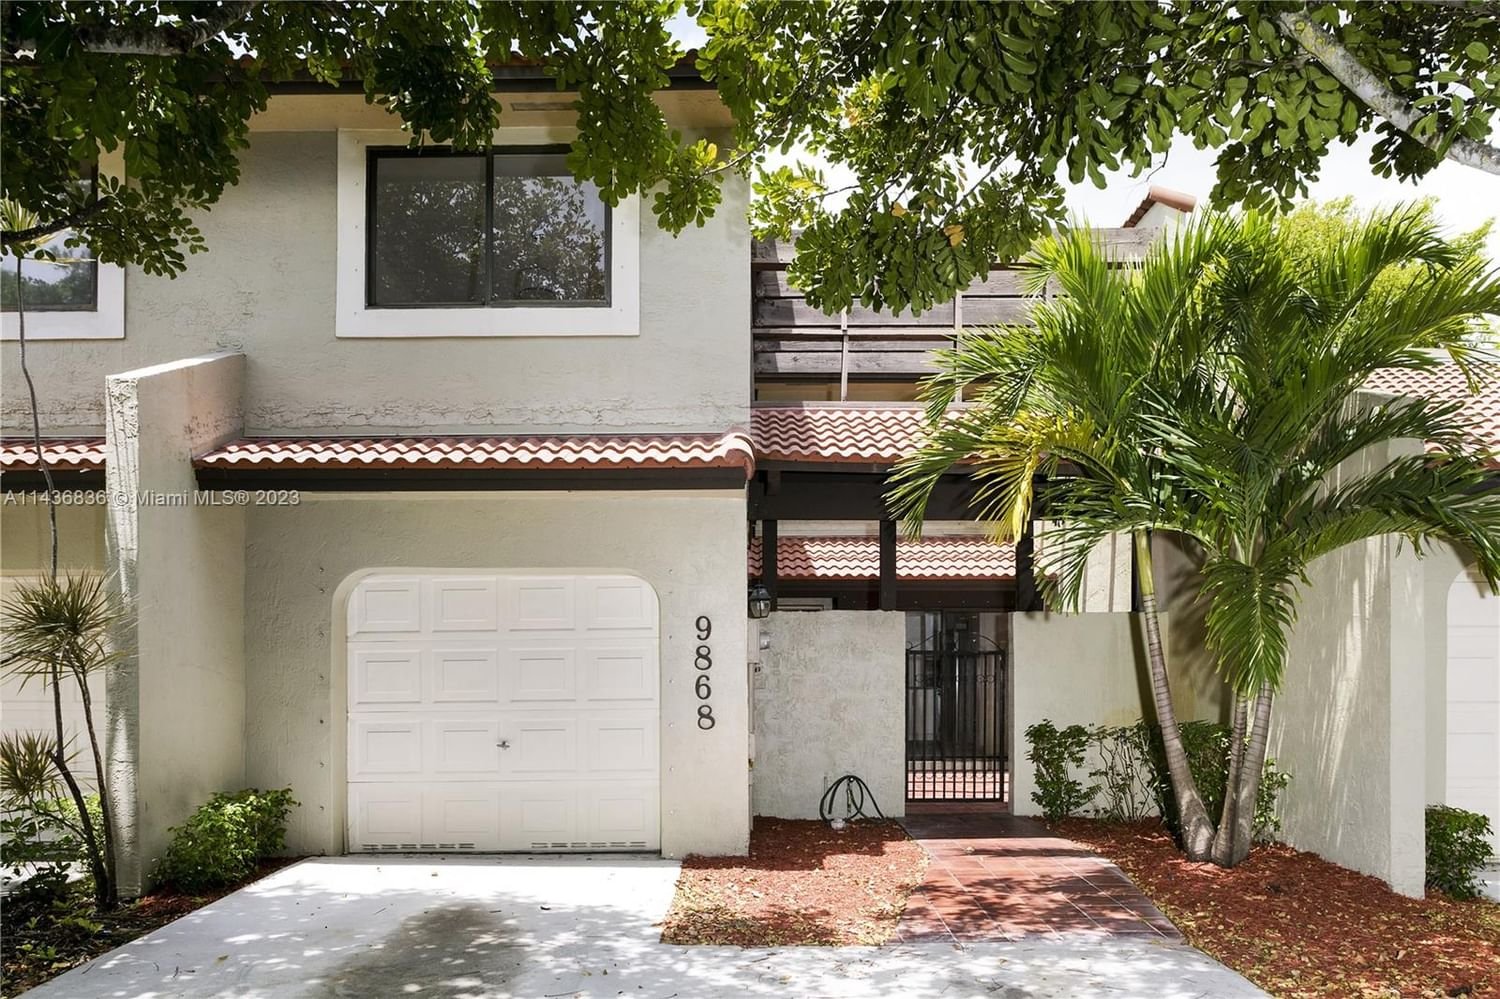 Real estate property located at 9868 Costa Del Sol Blvd F-93, Miami-Dade County, Doral, FL